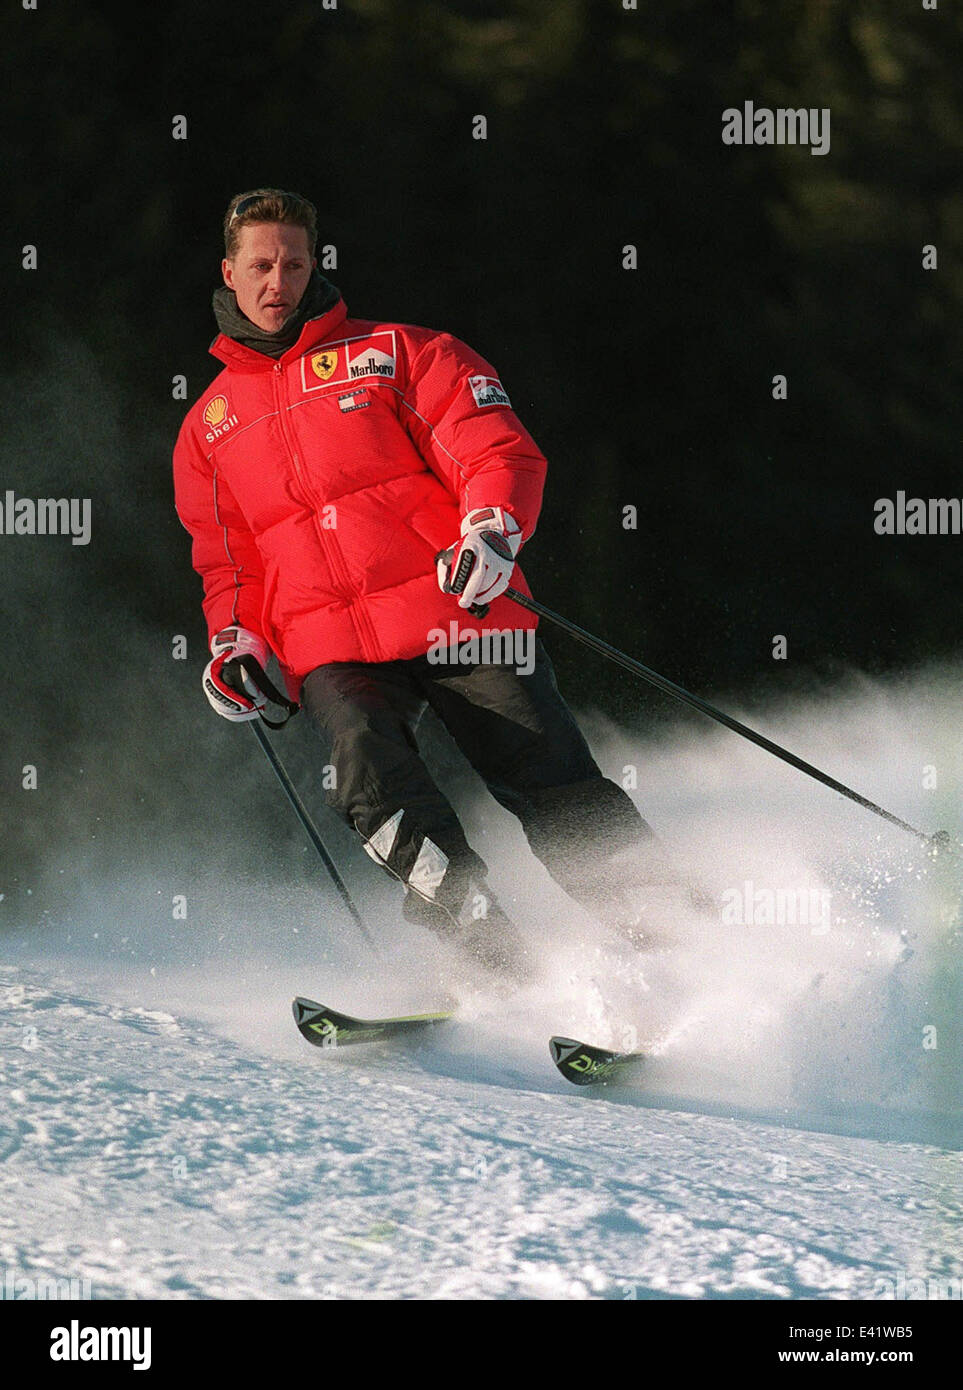 Schumacher skiing immagini e fotografie stock ad alta risoluzione - Alamy